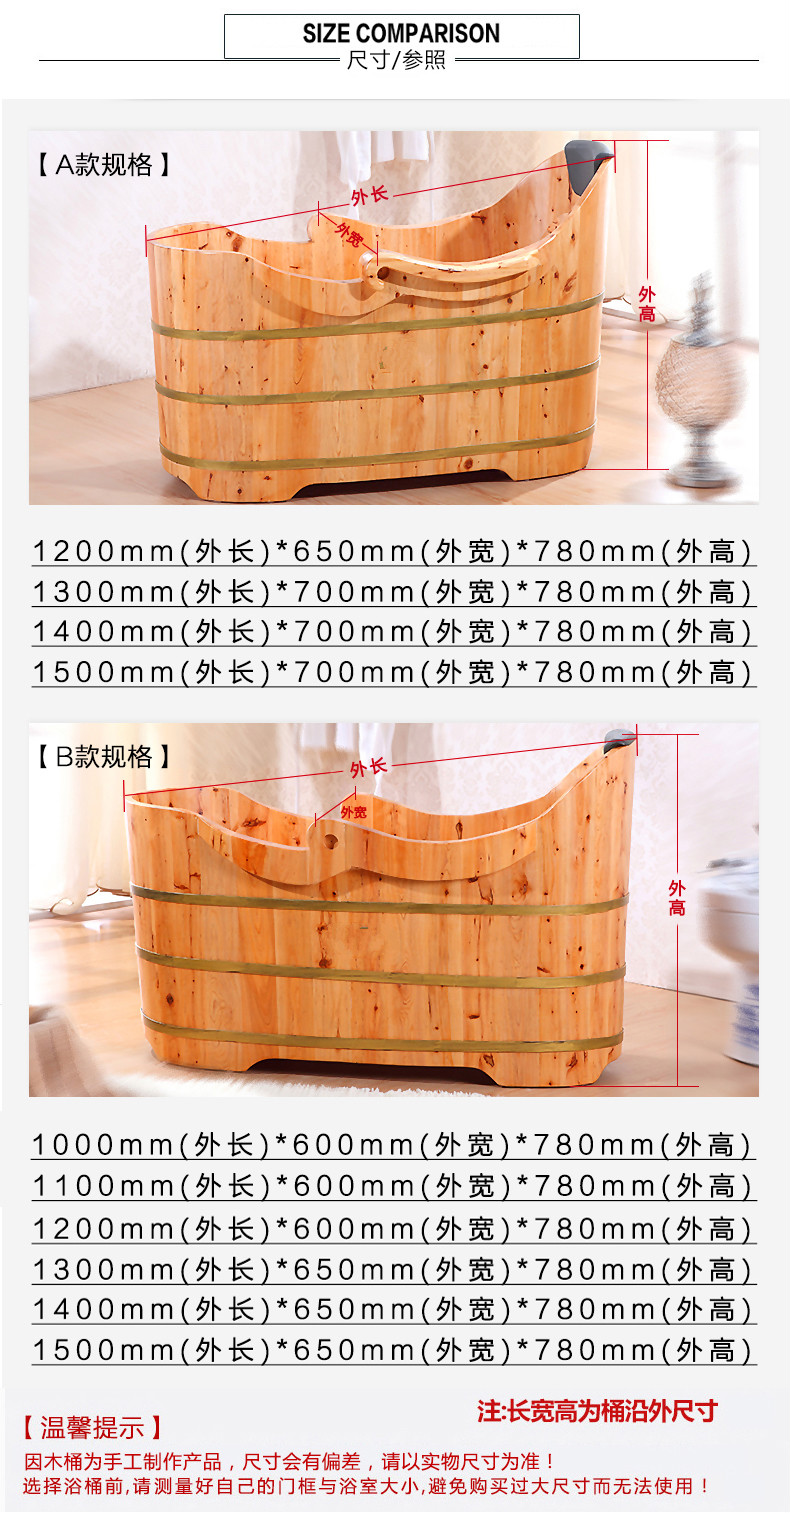 木浴盆价格及图片1米2图片